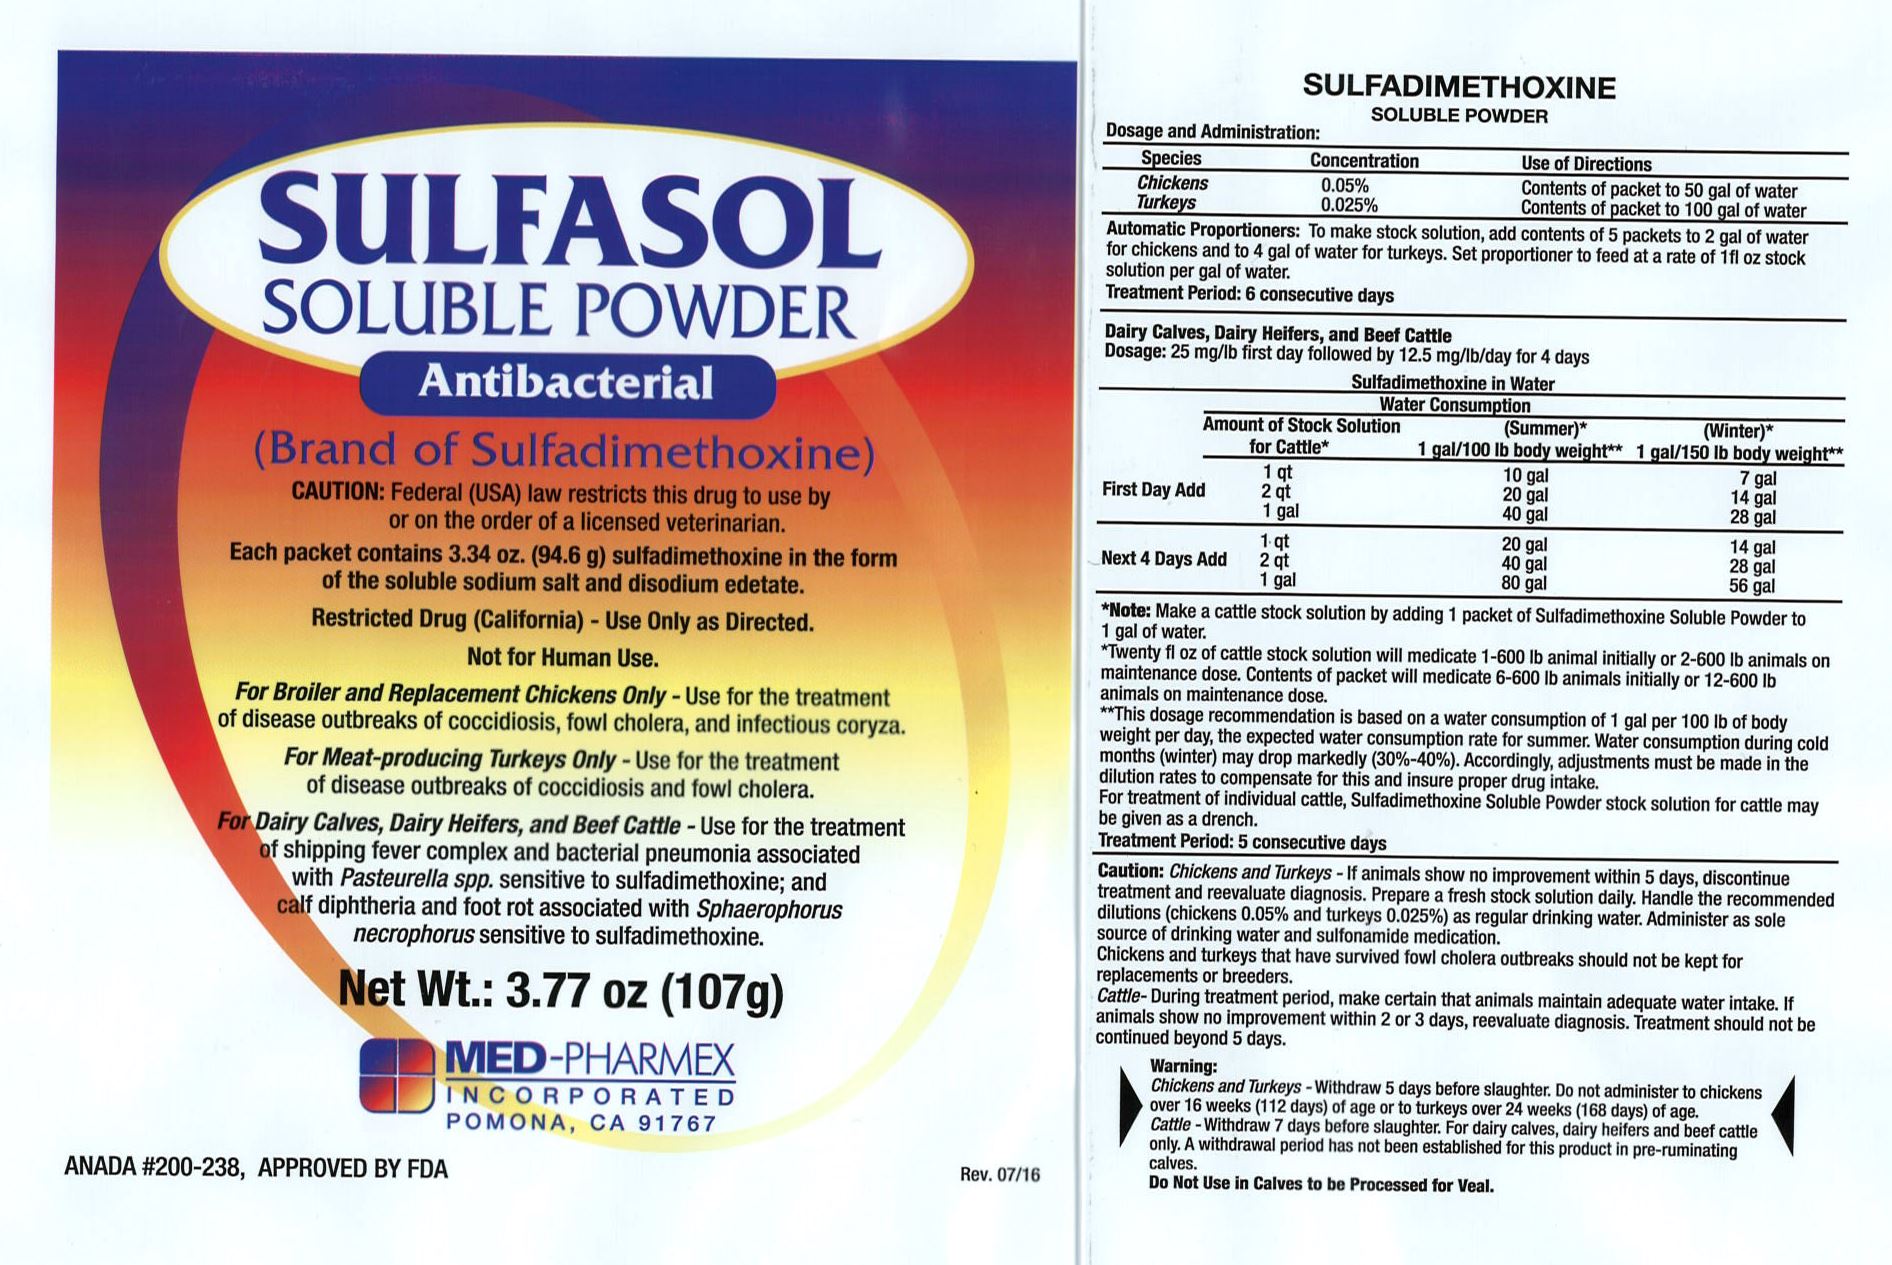 Sulfasol Label